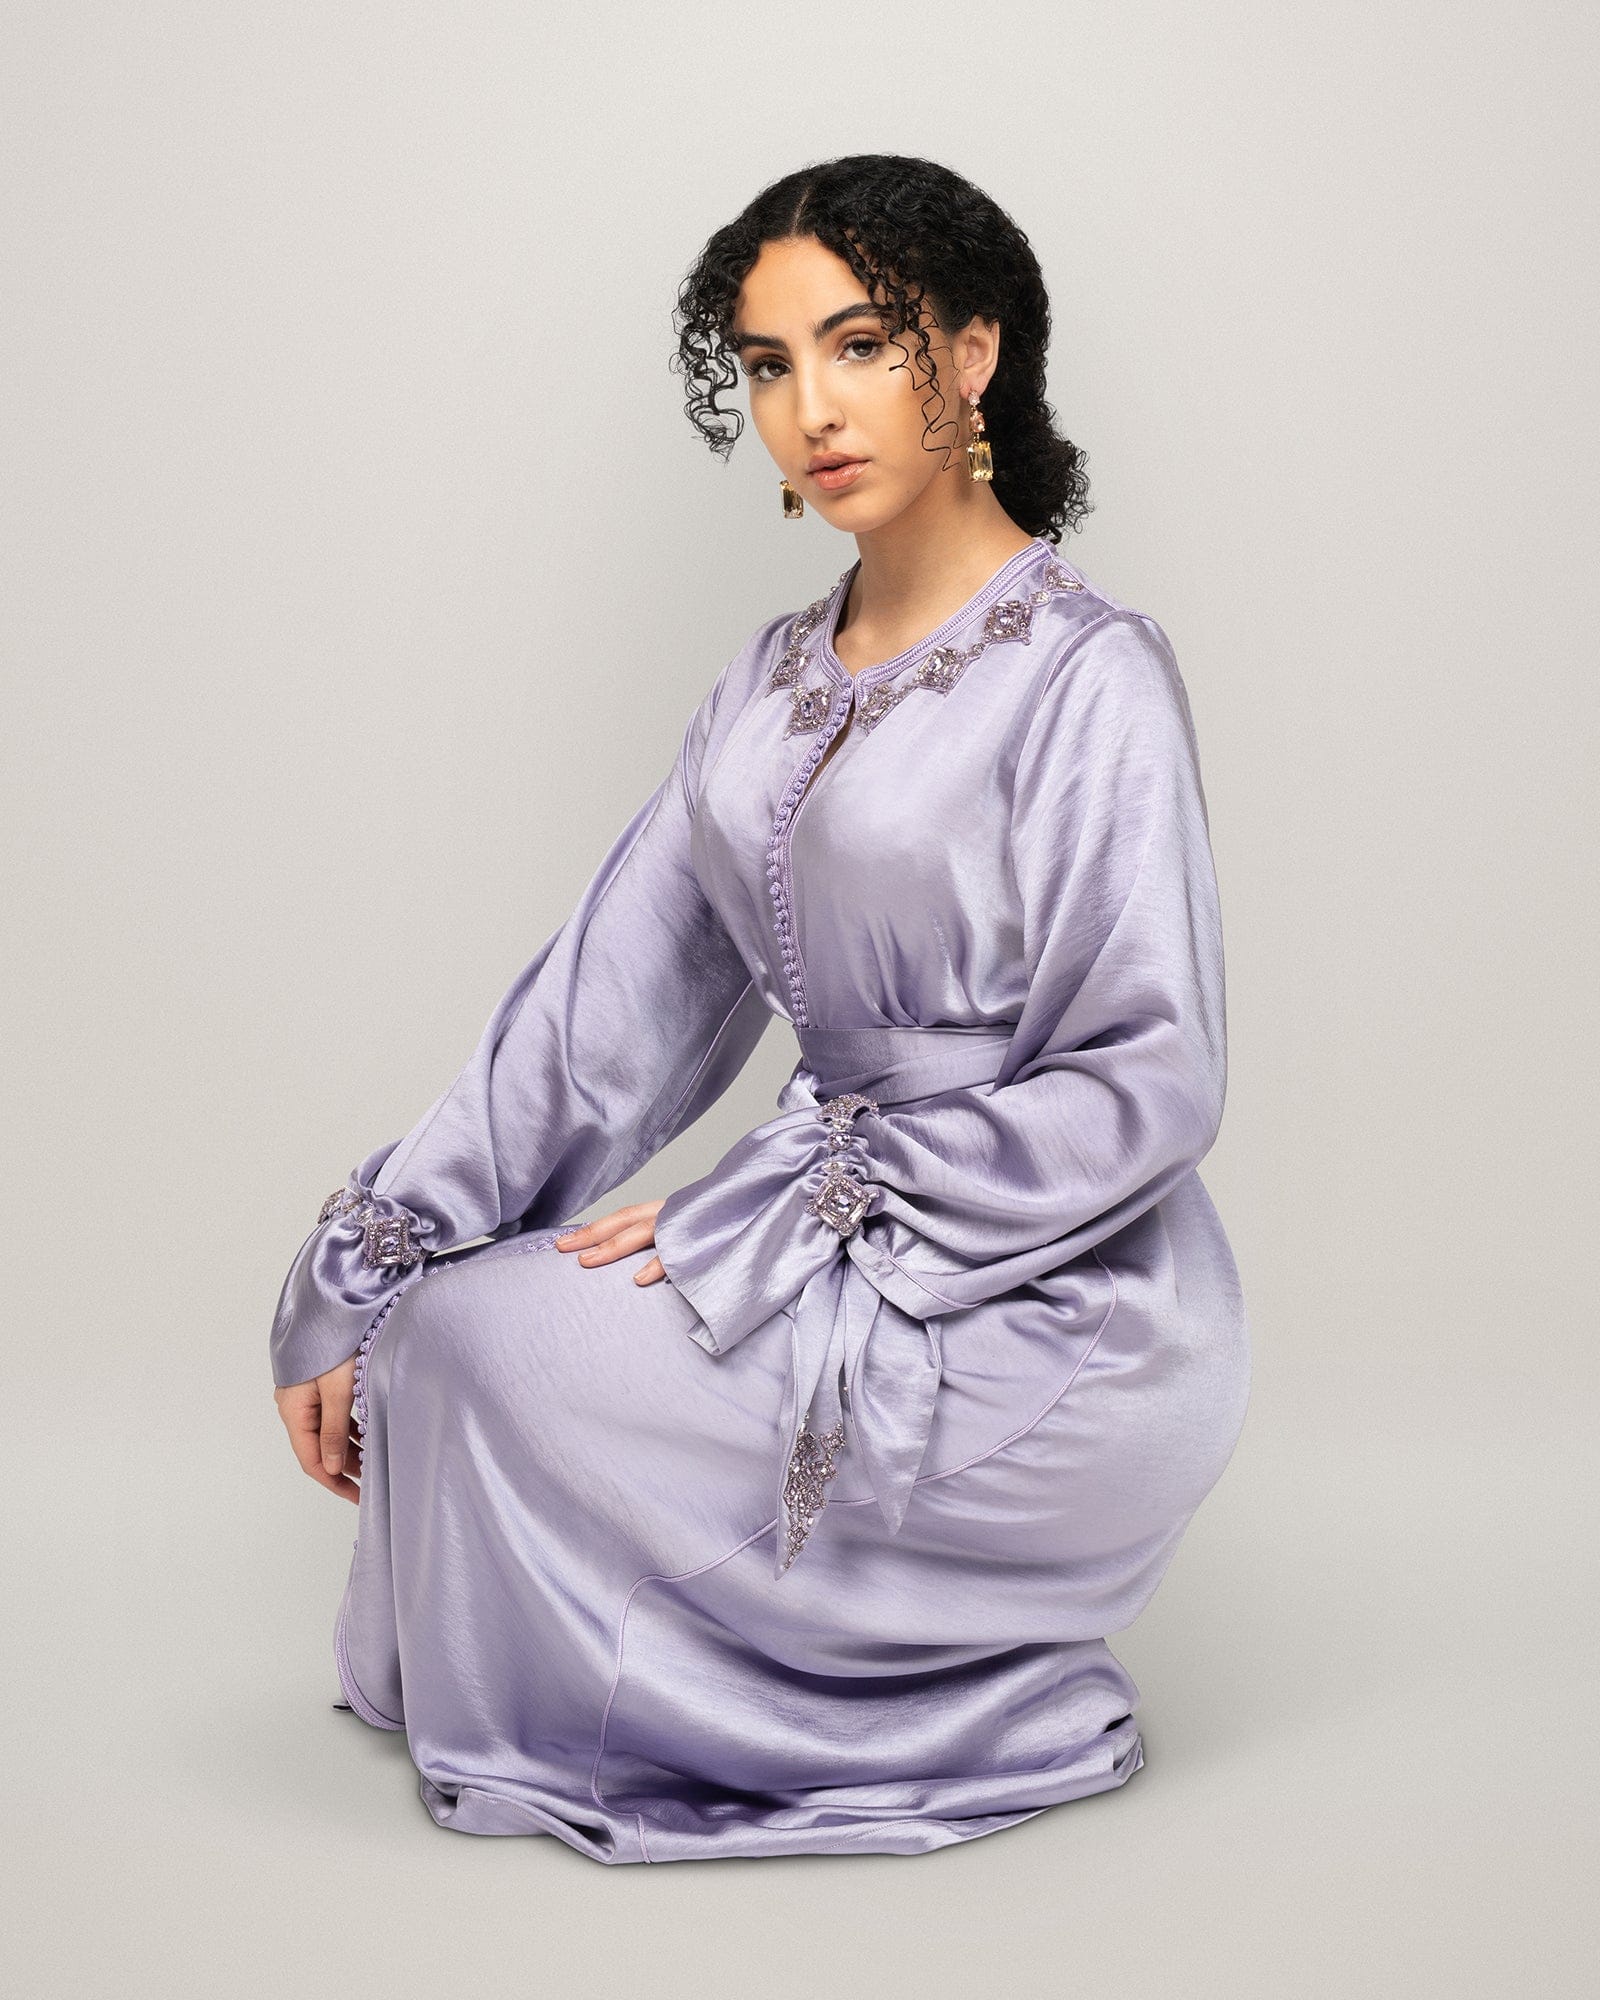 Acra caftan, kaftan, kaftane, caftane, marokkaanse jurk., eid jurk, eid outfit